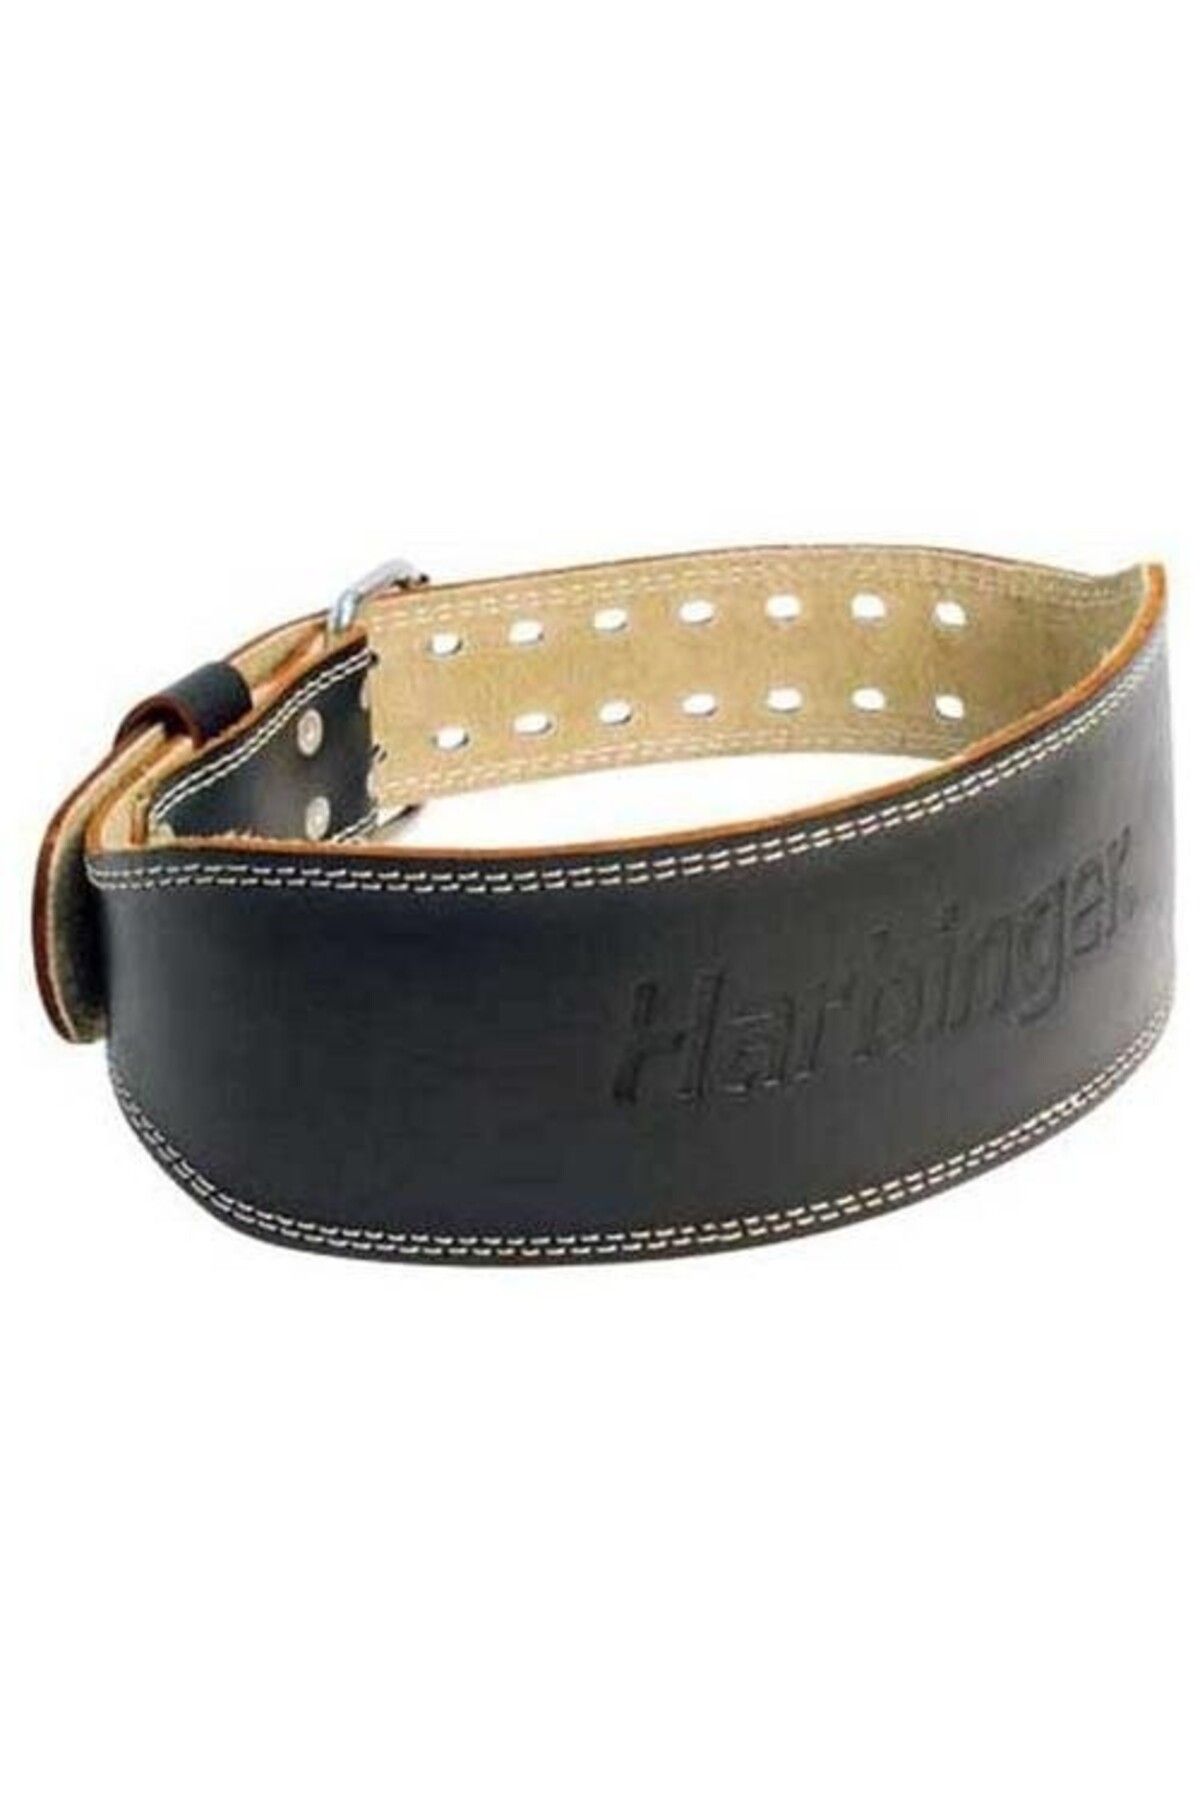 Harbinger 4 Padded Leather Belt Ağırlık Kemeri L